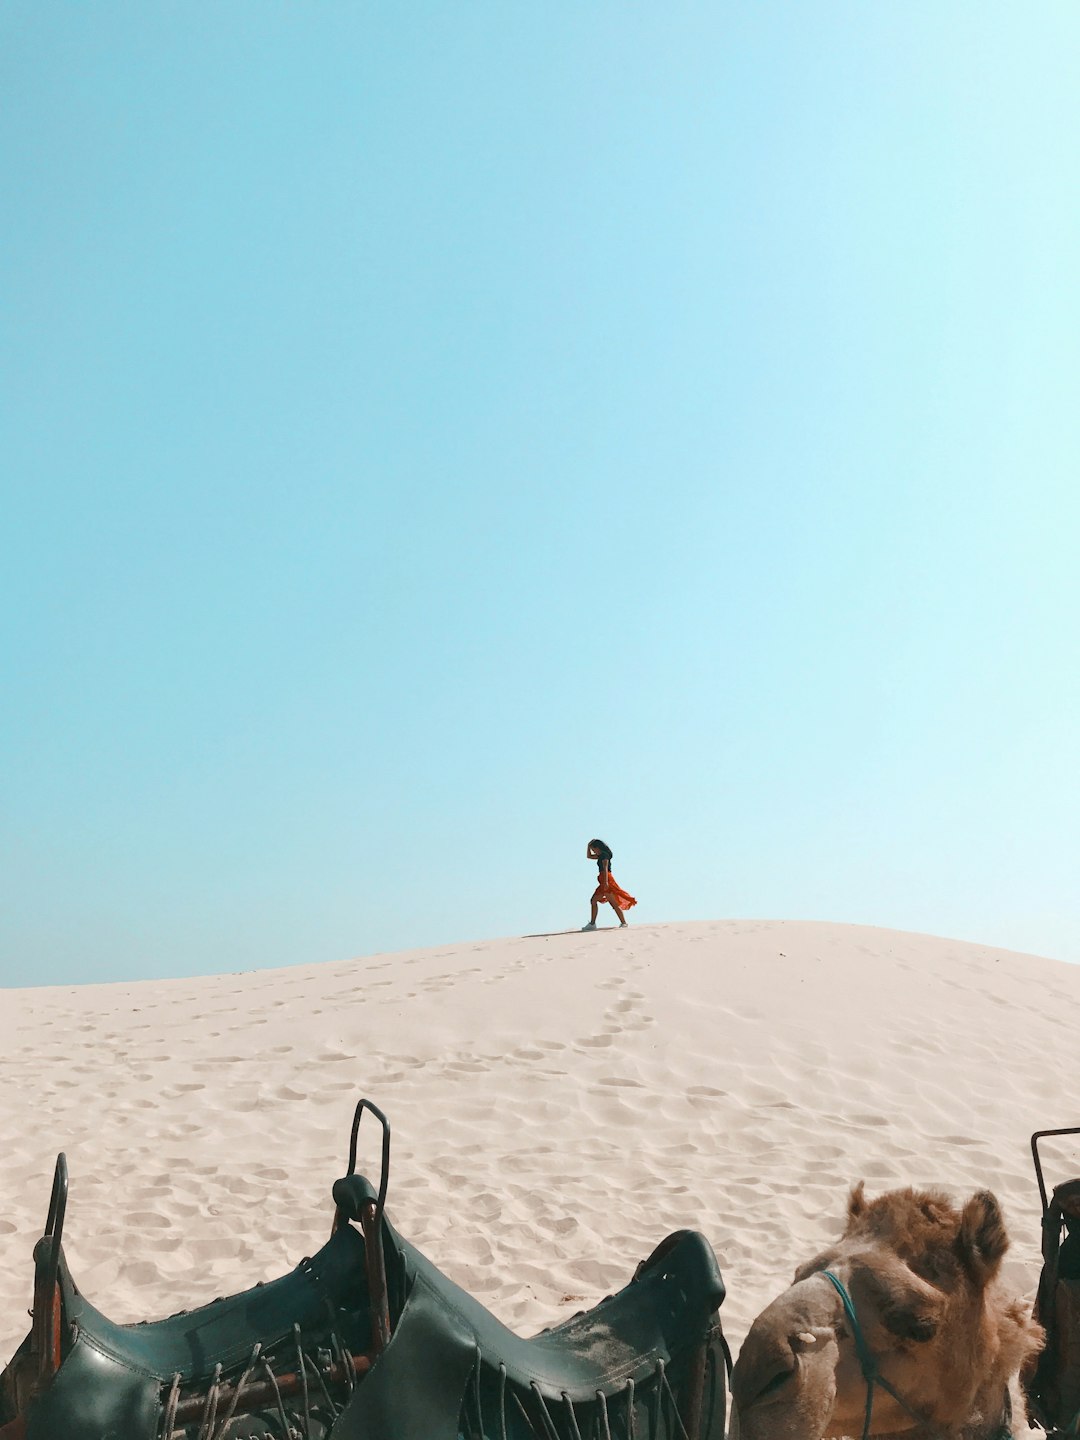 people walking on sand dunes during daytime